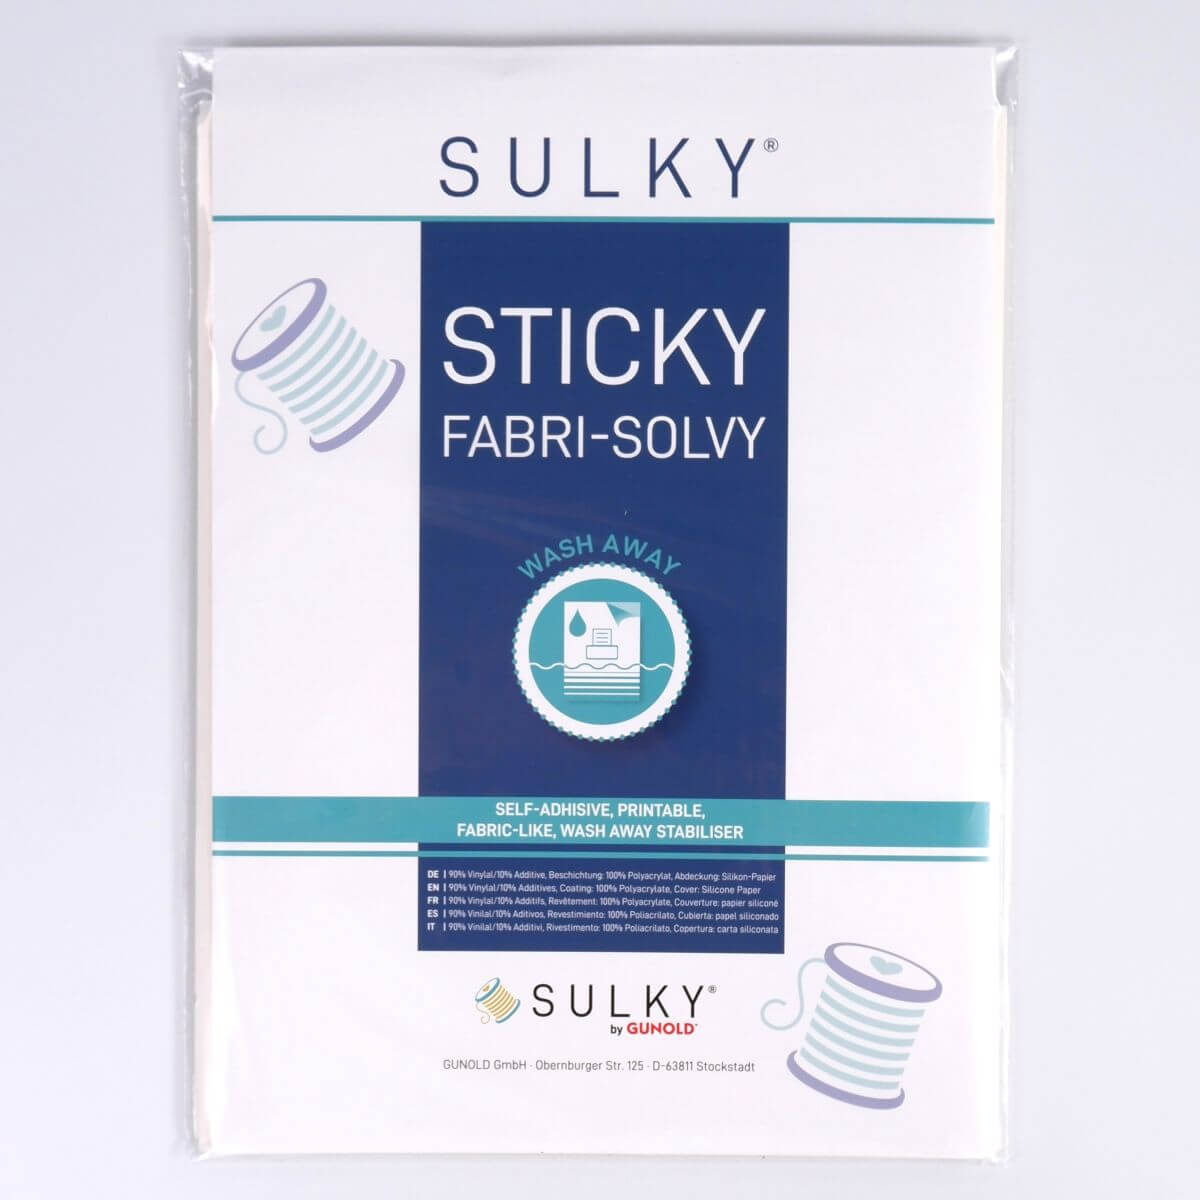 SULKY STICKY FABRI-SOLVY, 12 sheets á
21,5cm x 28cm